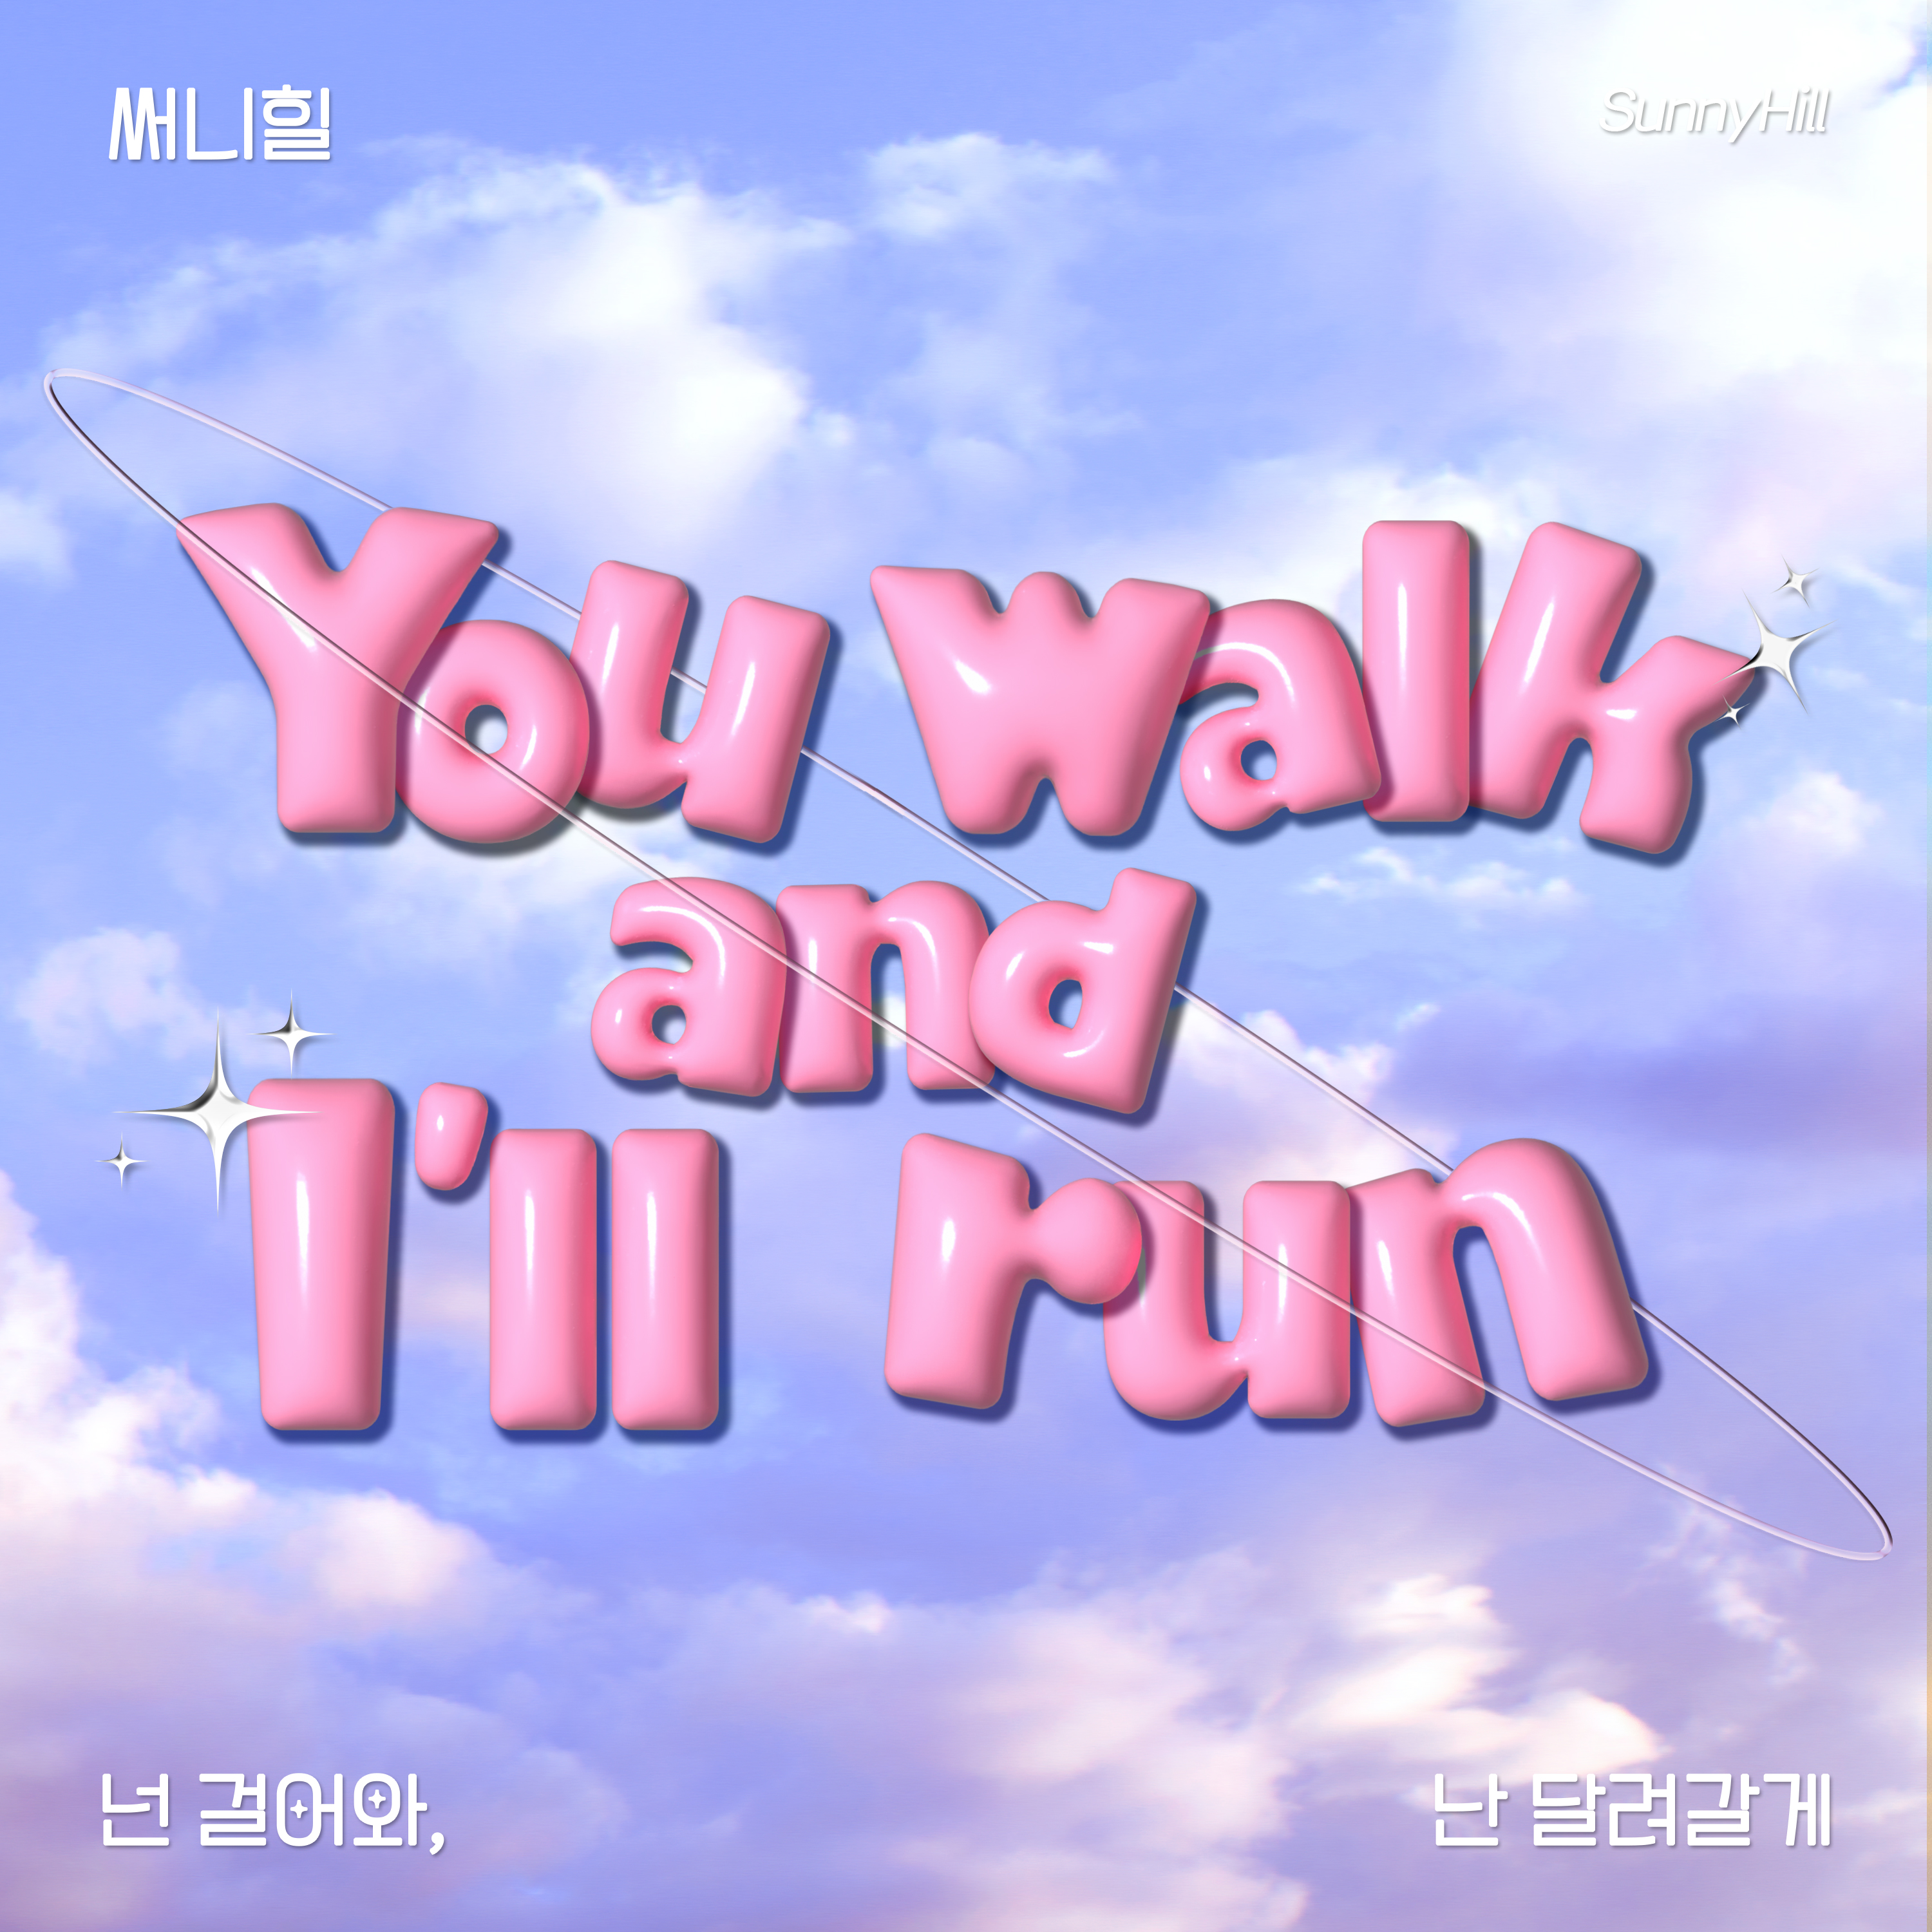 圖 Sunny Hill - You walk, and I'll run